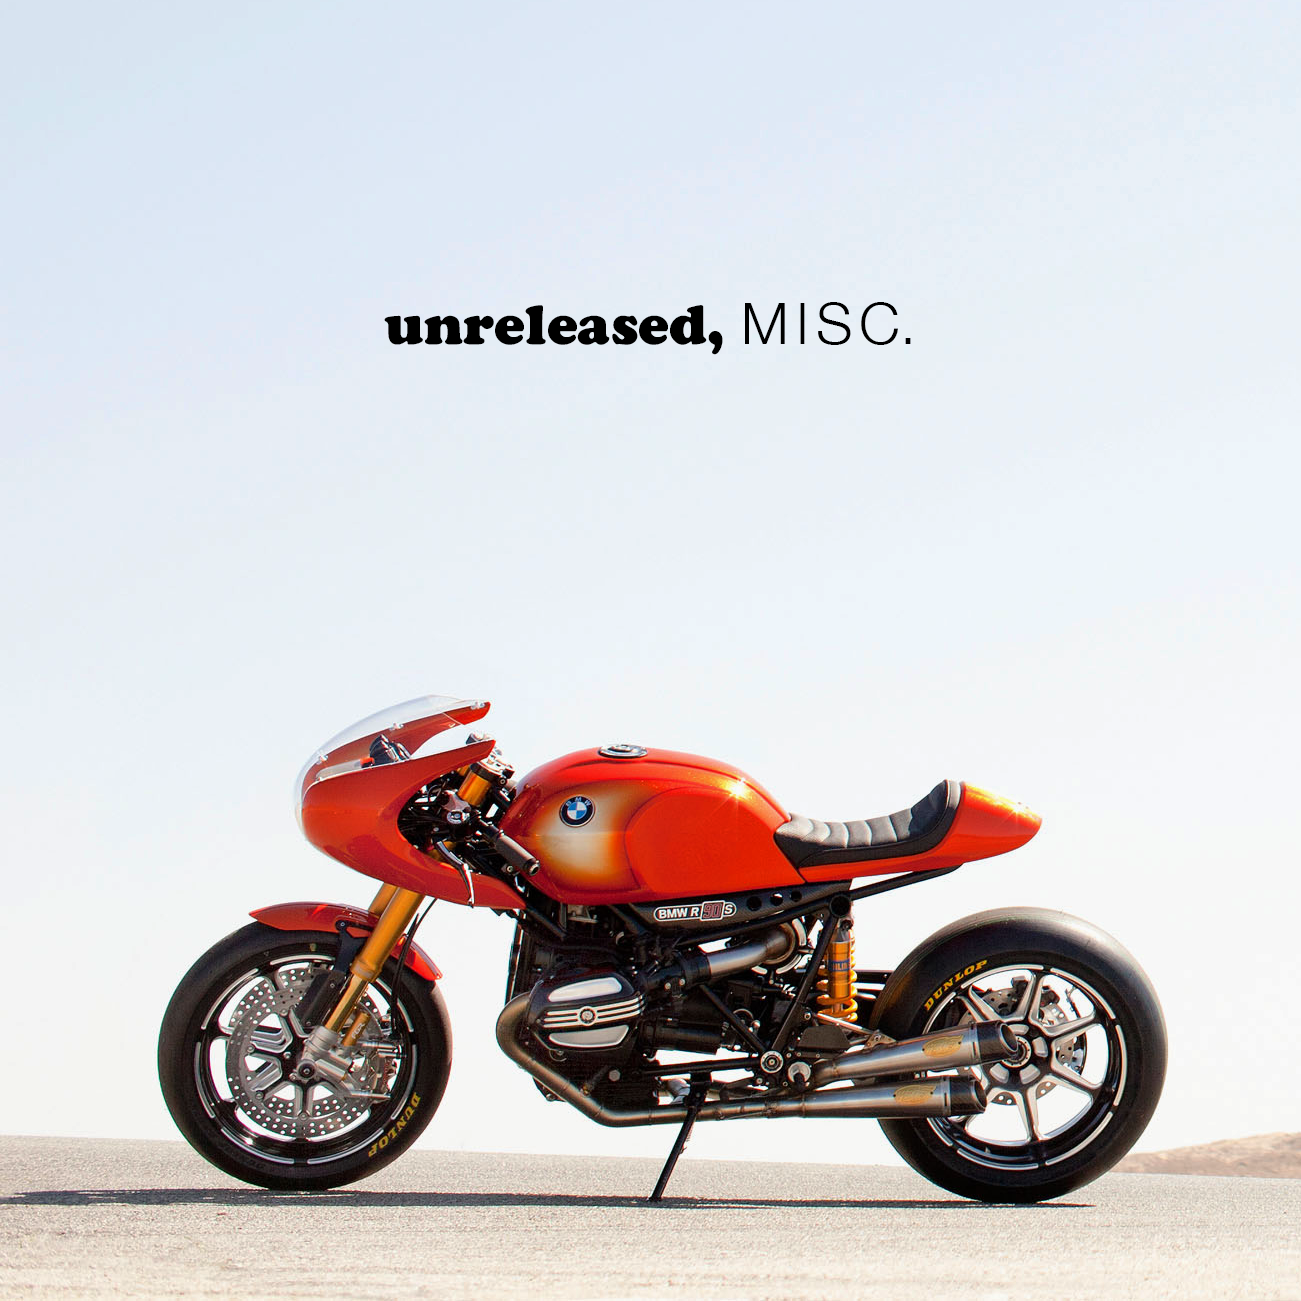 Unreleased, MISC - Frank Ocean | MixtapeMonkey.com